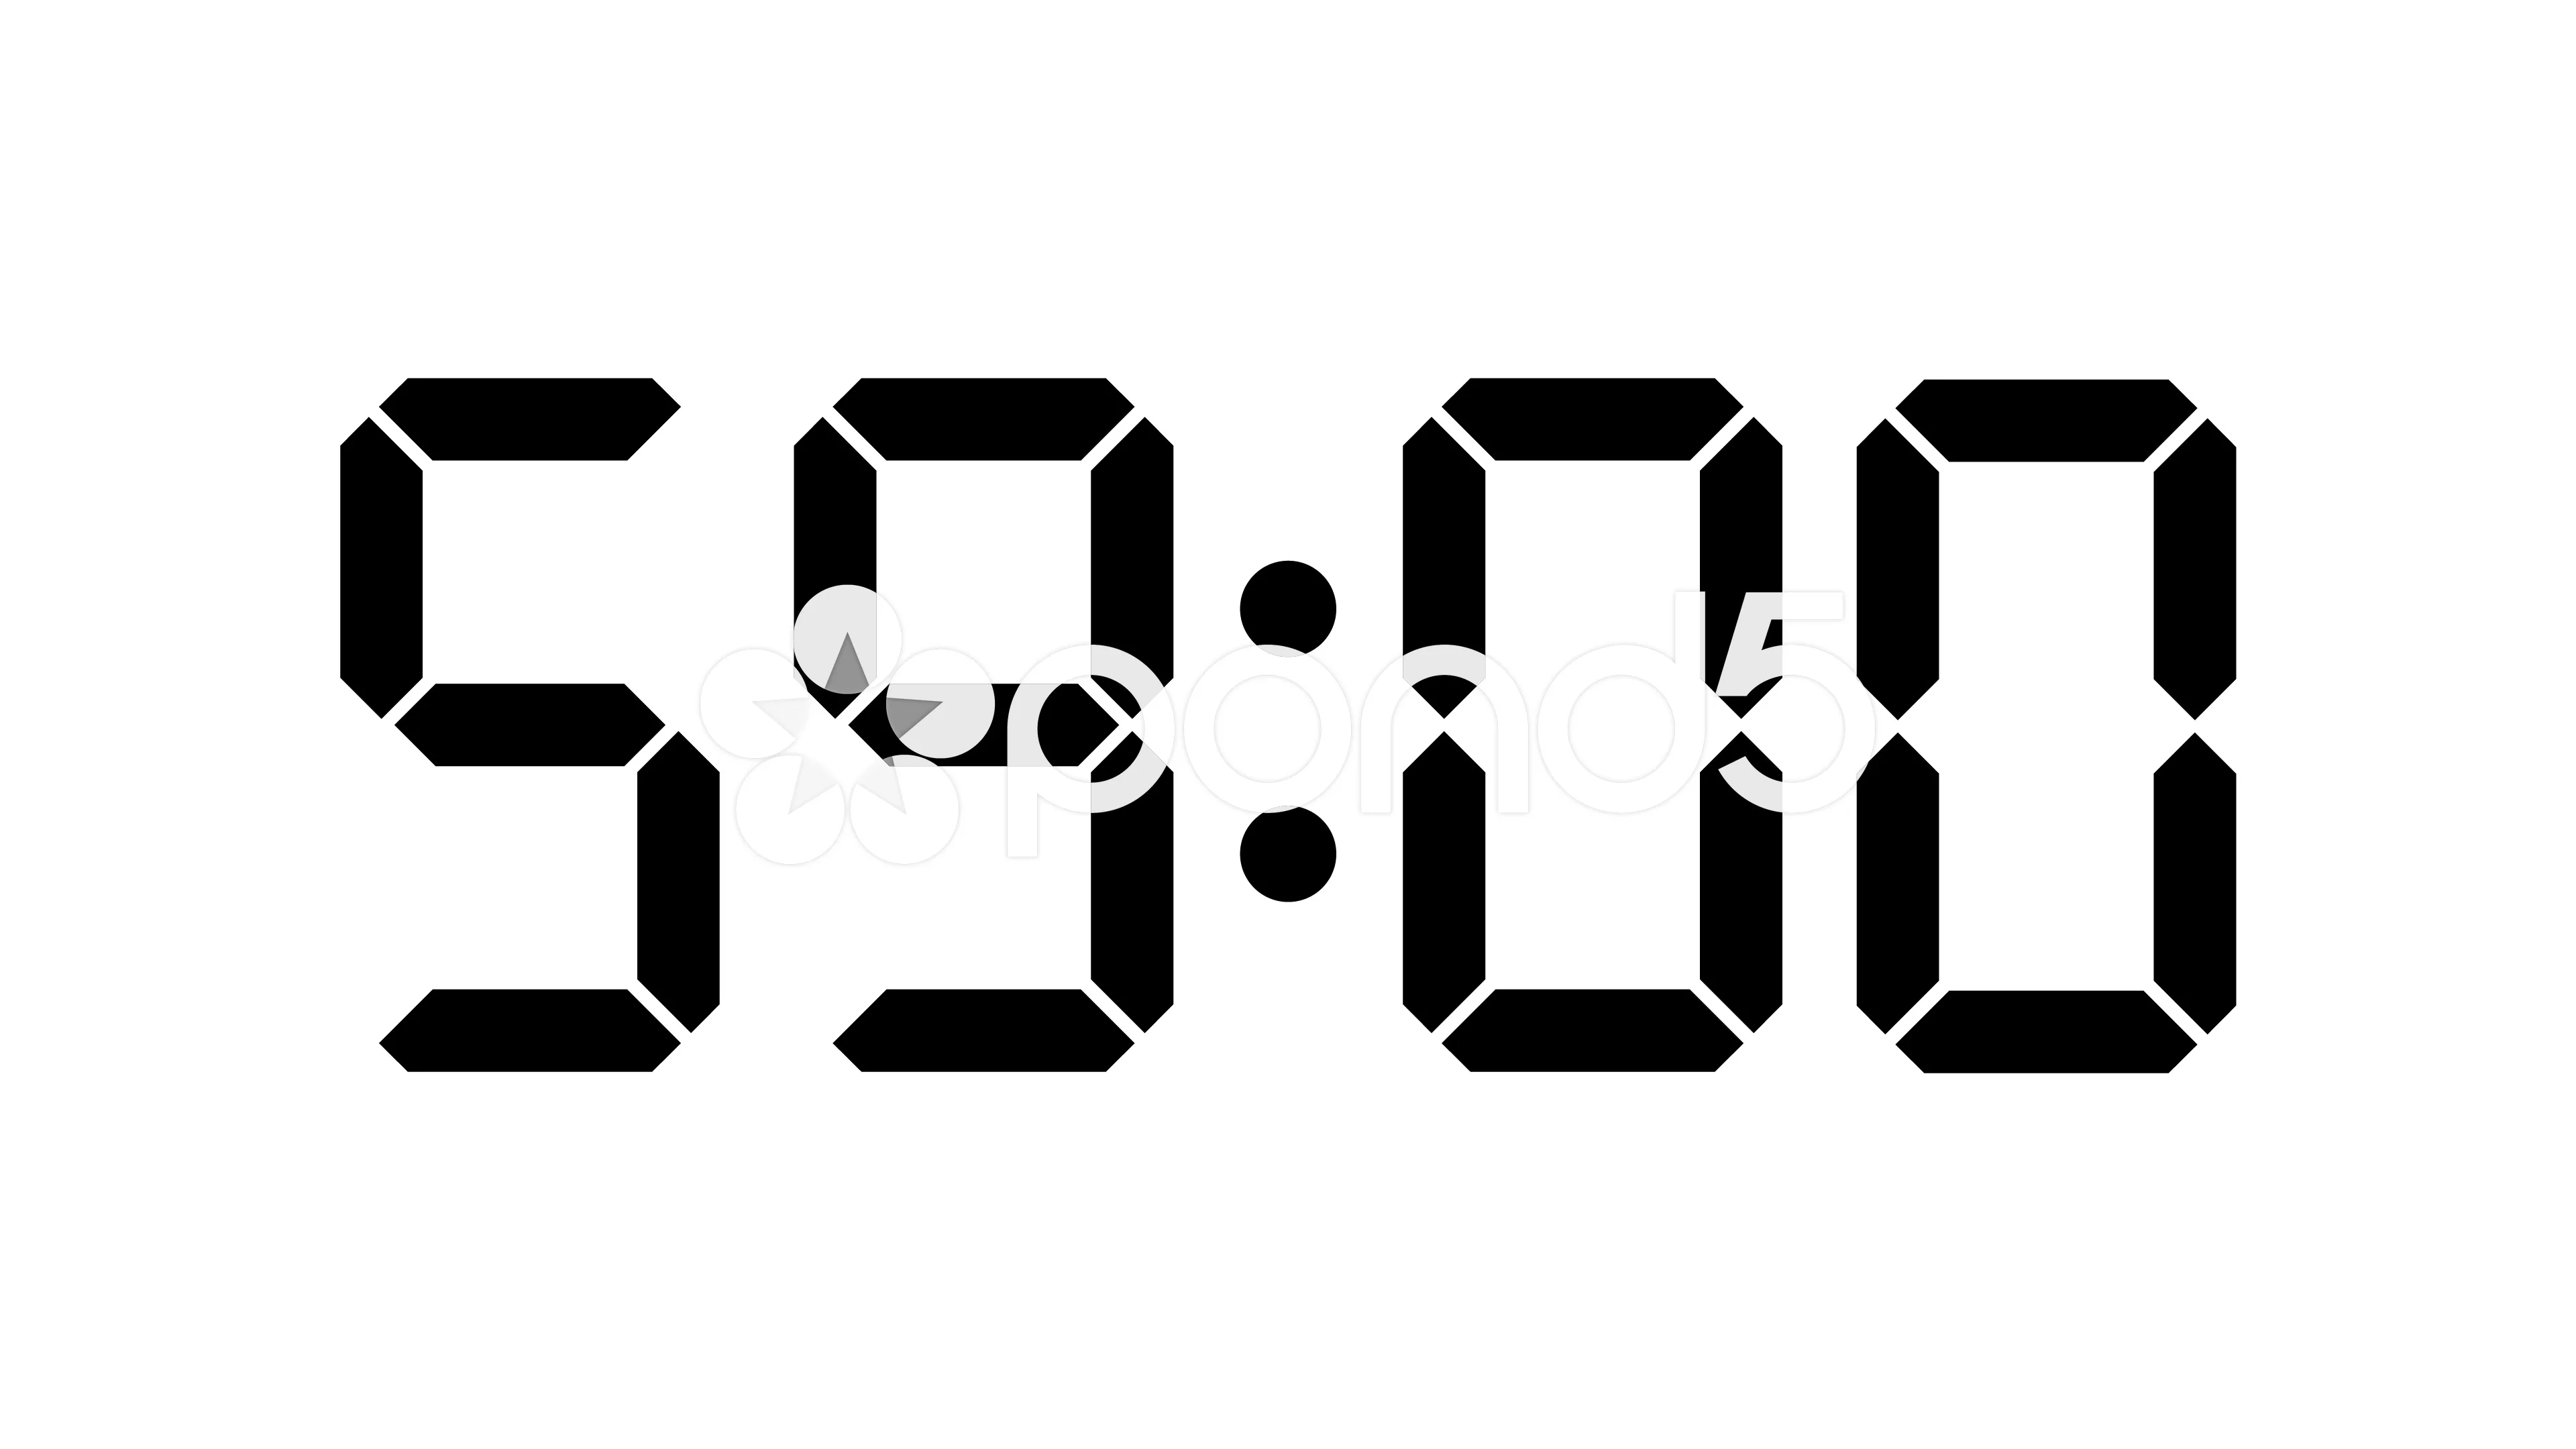 https://images.pond5.com/digital-timer-countdown-60-seconds-051925711_prevstill.jpeg